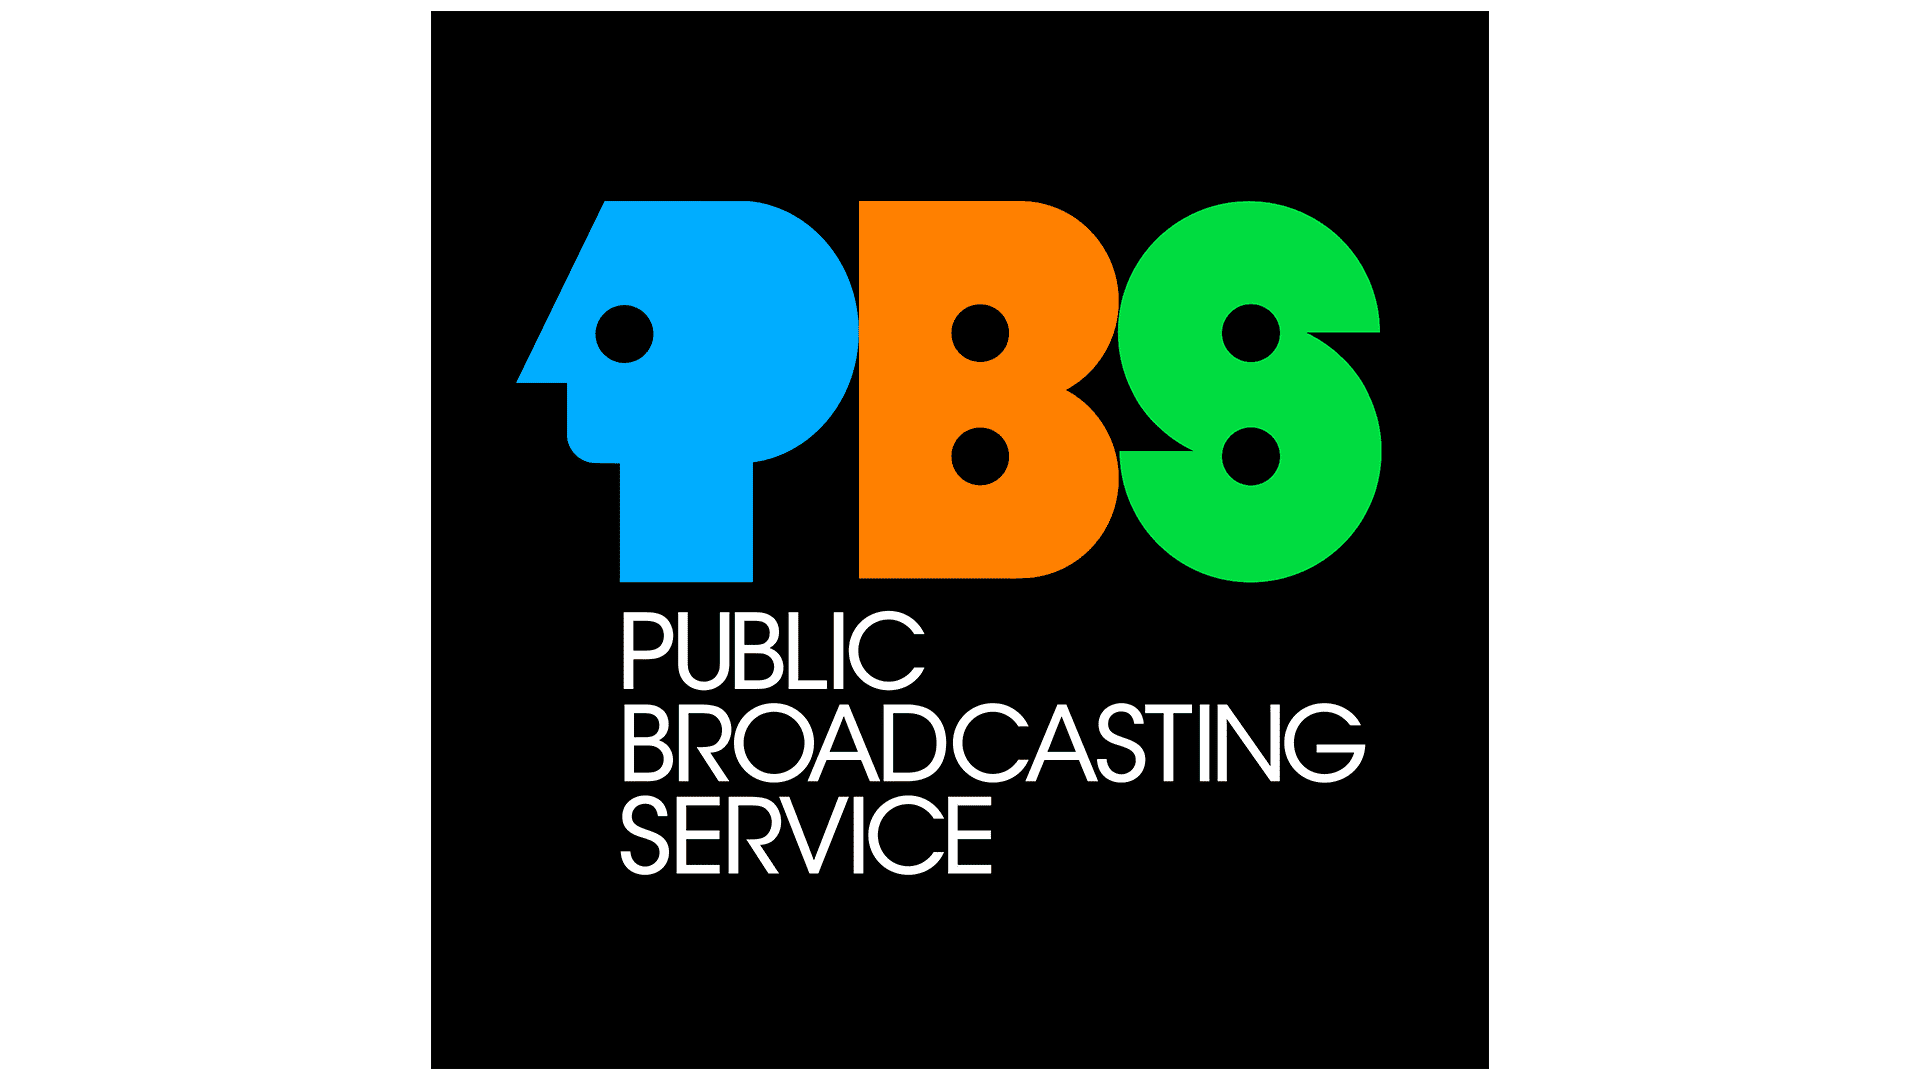 PBS Logo Logo, zeichen, emblem, symbol. Geschichte und Bedeutung